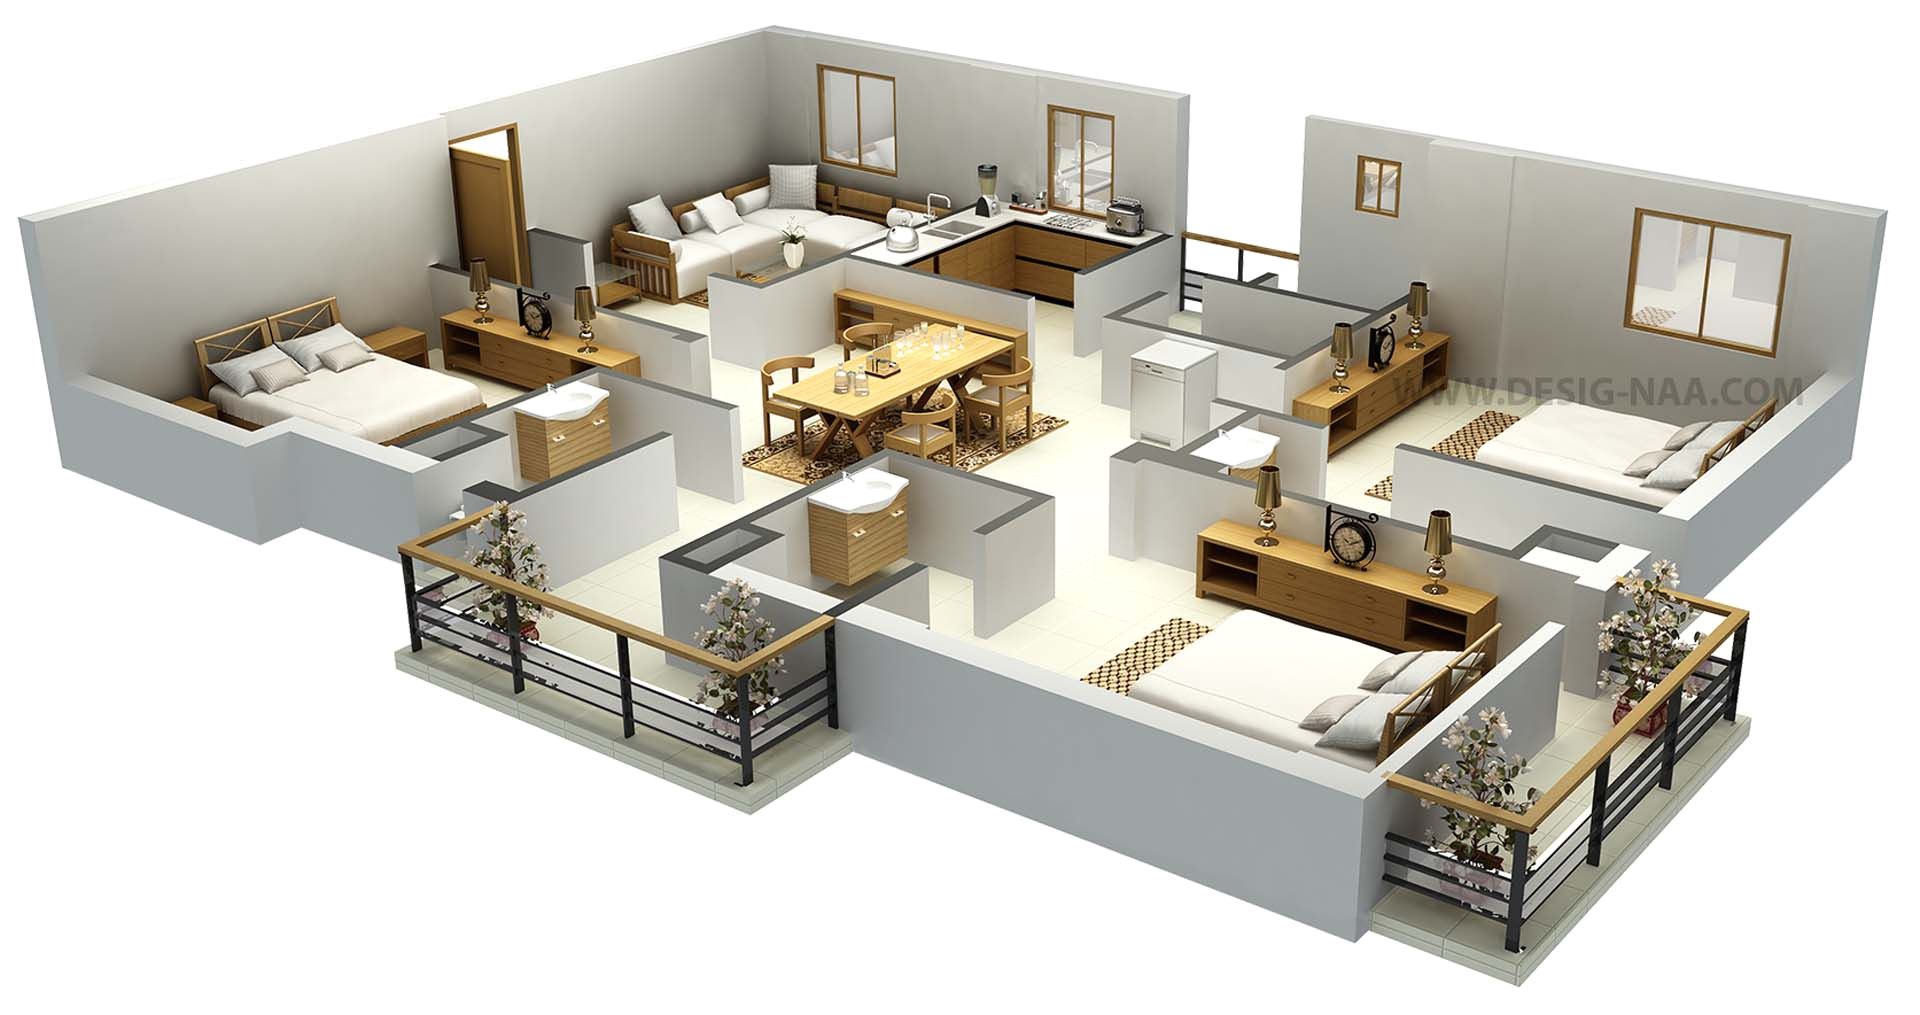 Home Plan 3d Design Impressive Floor Plans In 3d Home Design